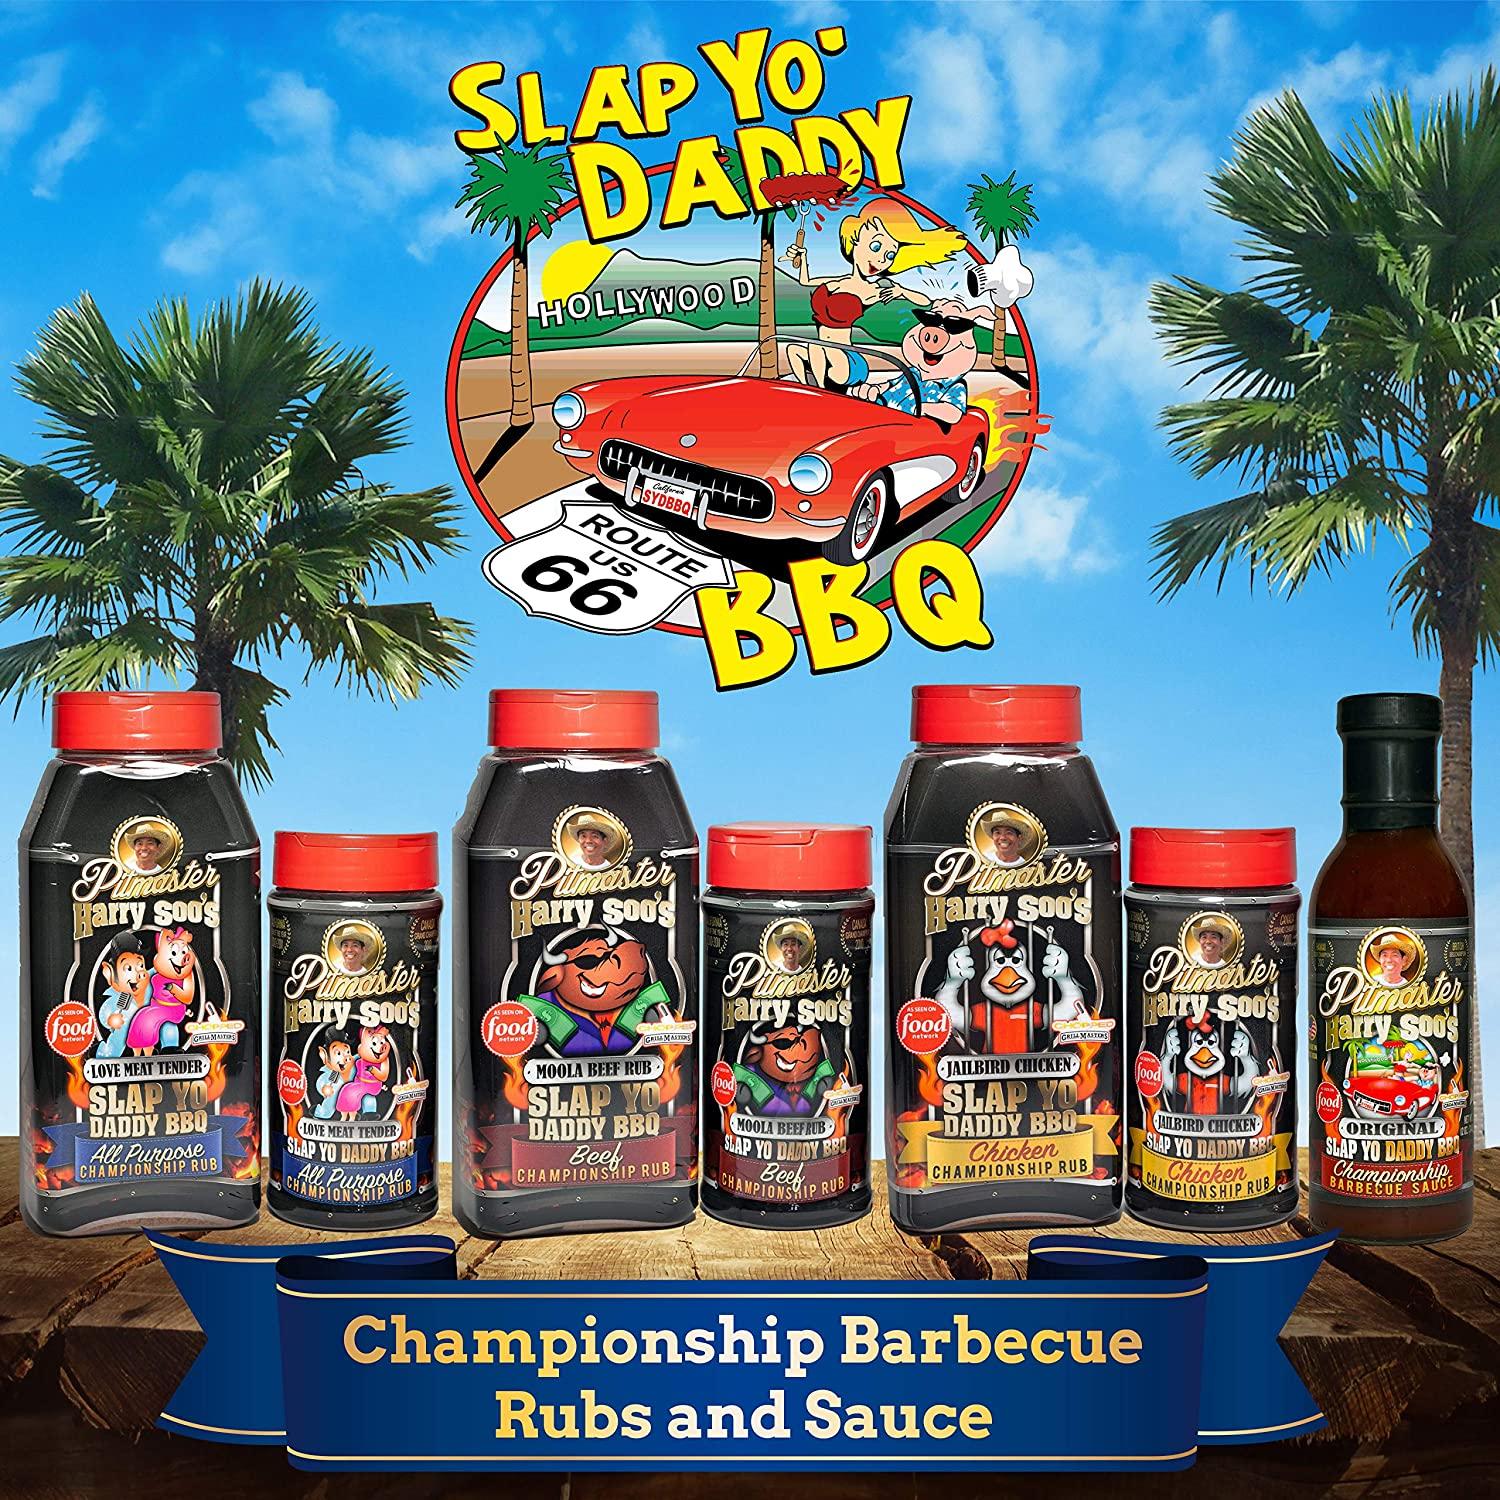 Slap Yo Daddy BBQ Rub - All Purpose Championship BBQ Seasoning from Harry  Soo - Pork Rub, Rib Rub, Brisket Rub - No MSG, Gluten Free - BBQ Rubs and  Spices for